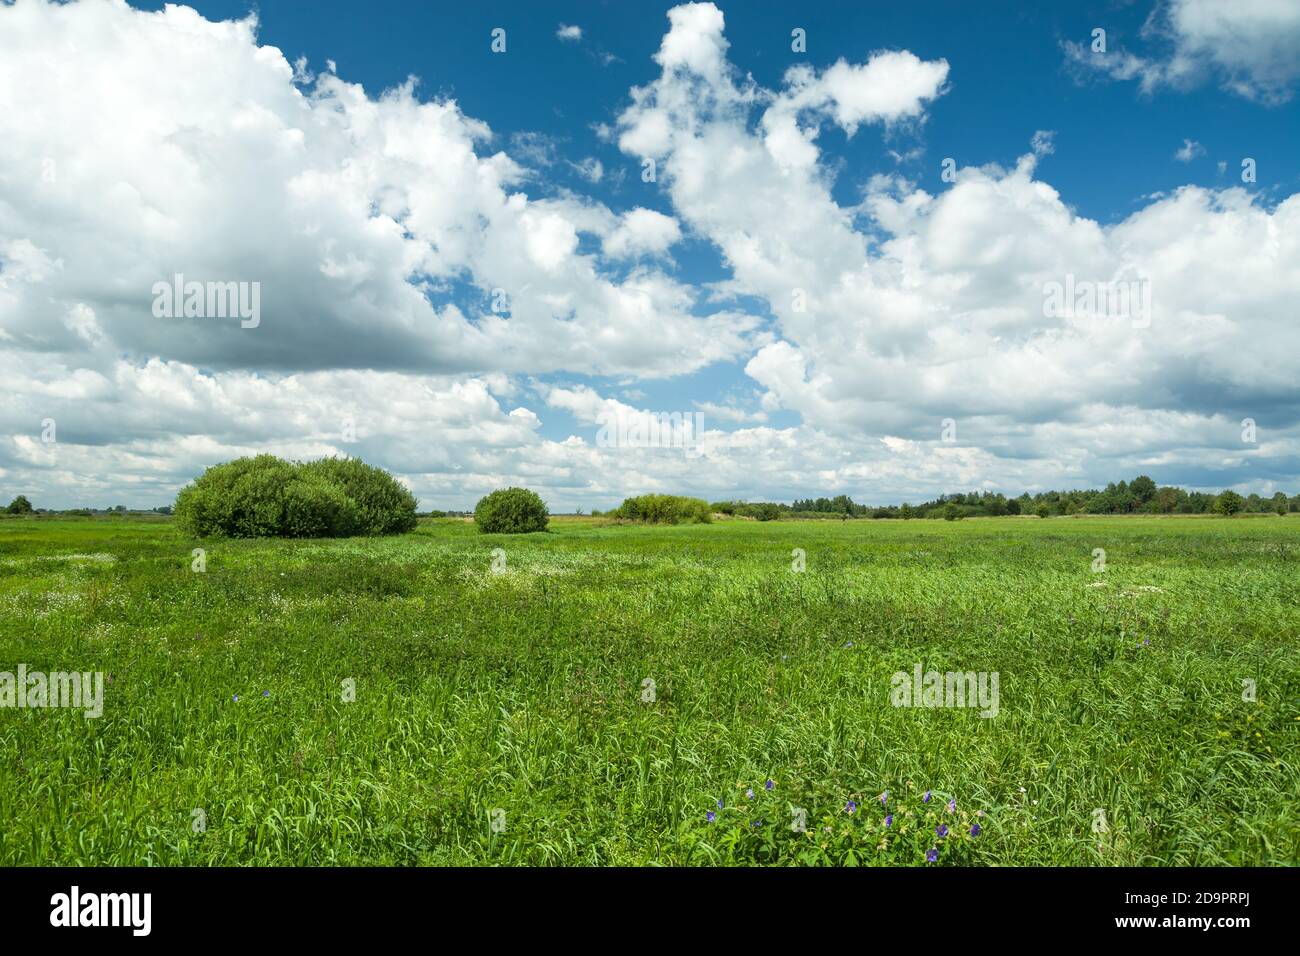 Hierba verde alta en el prado y nubes blancas contra el cielo azul Foto de stock